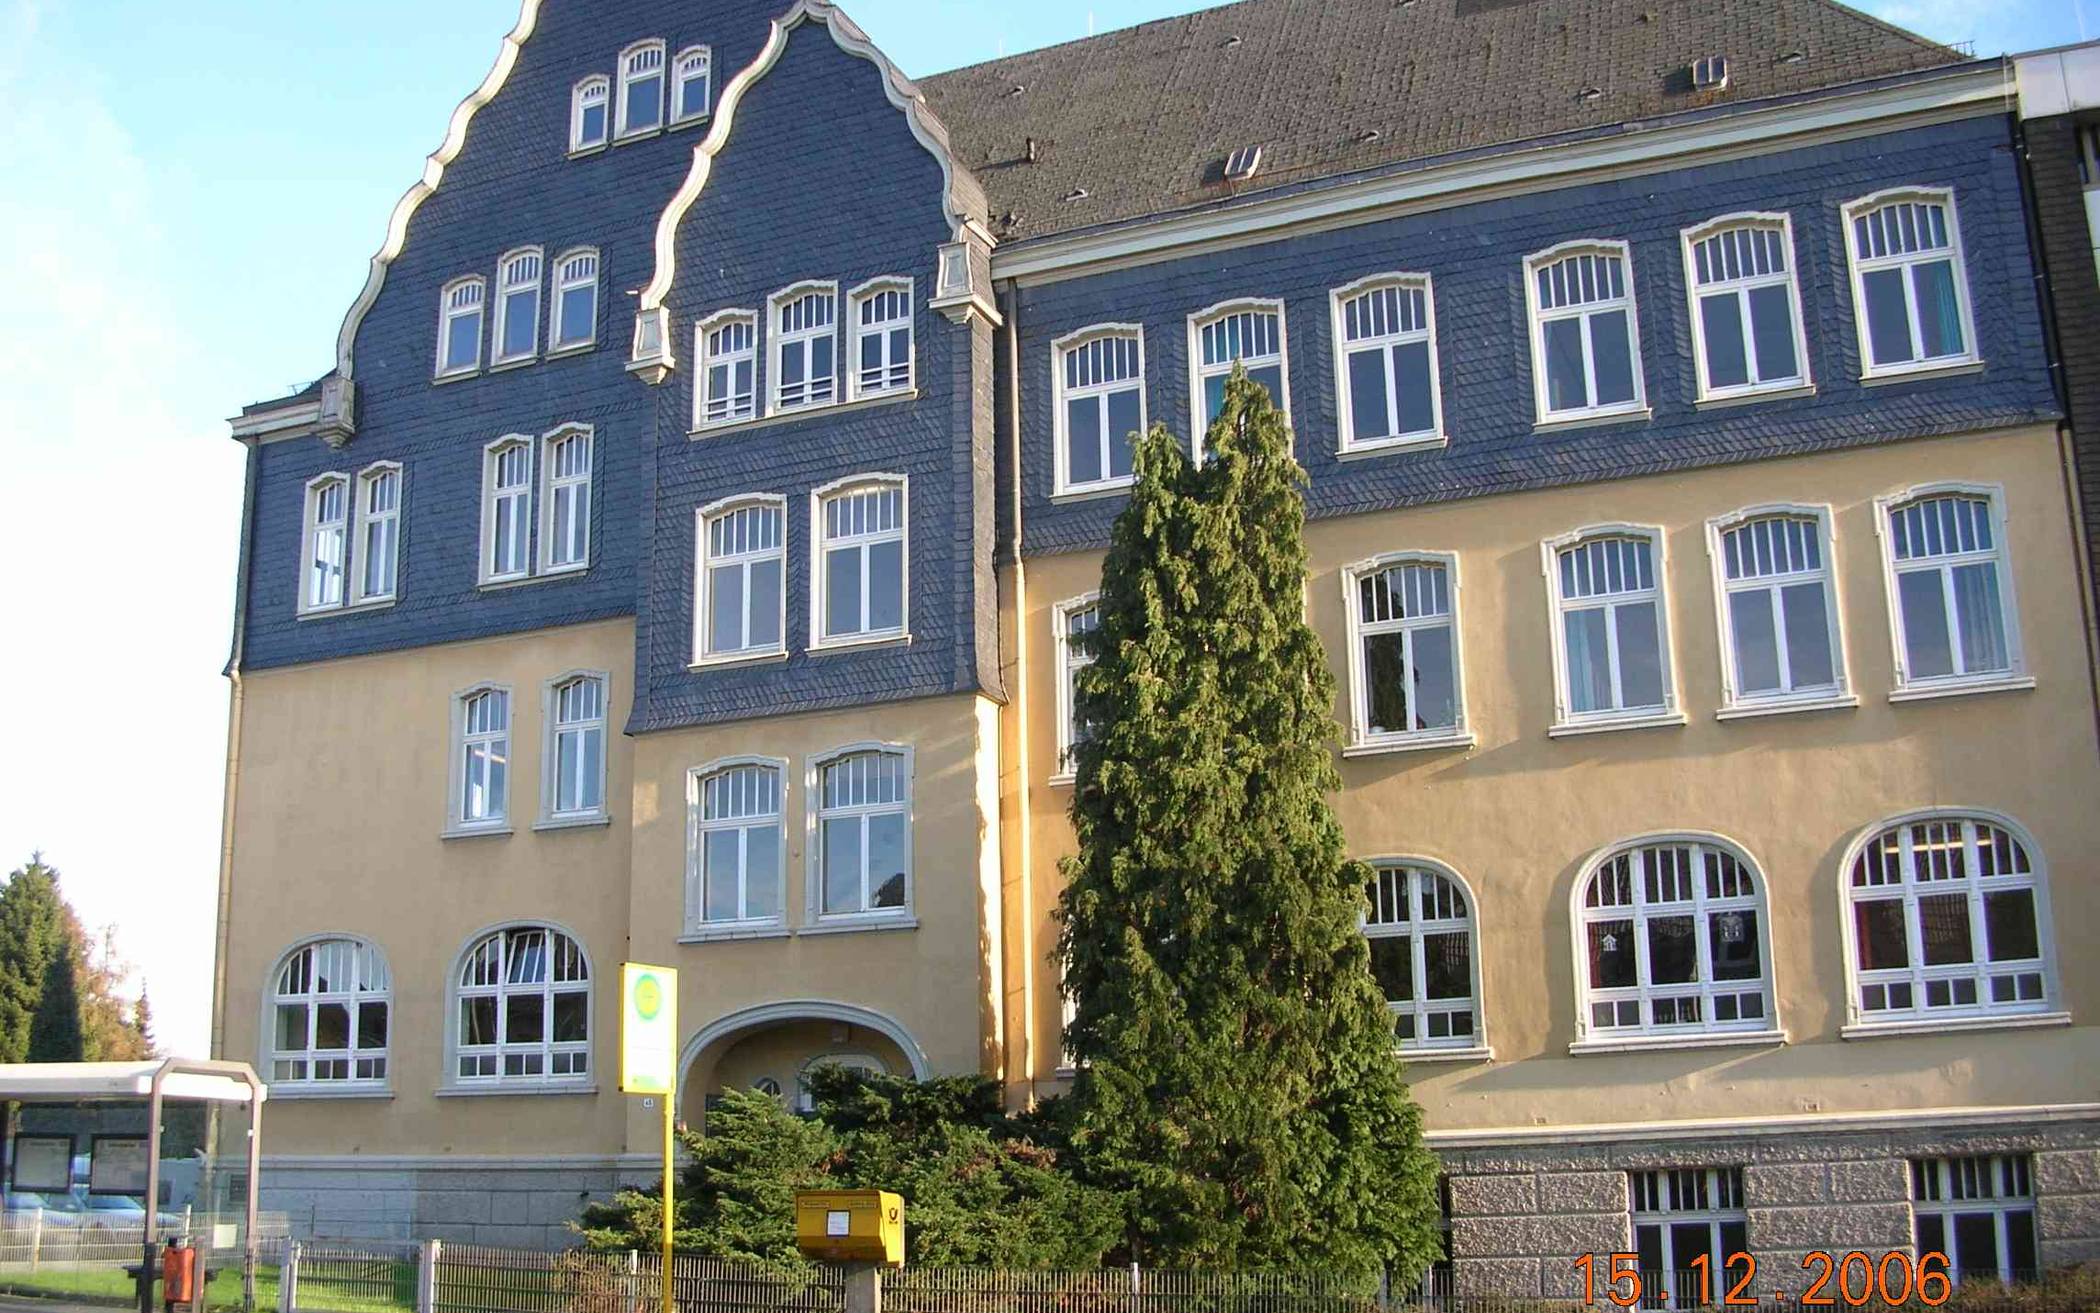  Das Gebäude an der Berghauser Straße. 